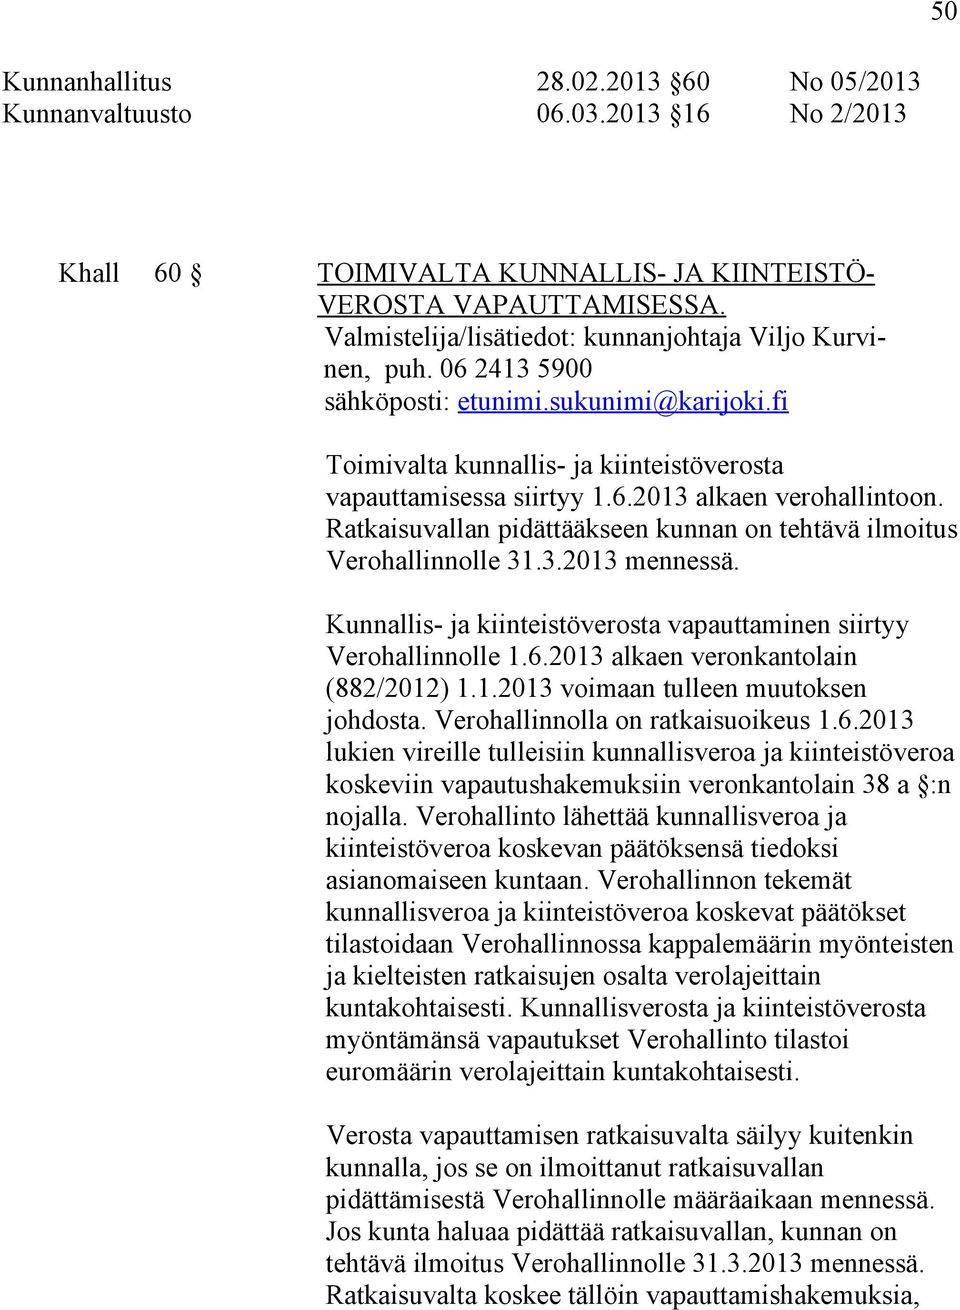 Ratkaisuvallan pidättääkseen kunnan on tehtävä ilmoitus Verohallinnolle 31.3.2013 mennessä. Kunnallis- ja kiinteistöverosta vapauttaminen siirtyy Verohallinnolle 1.6.